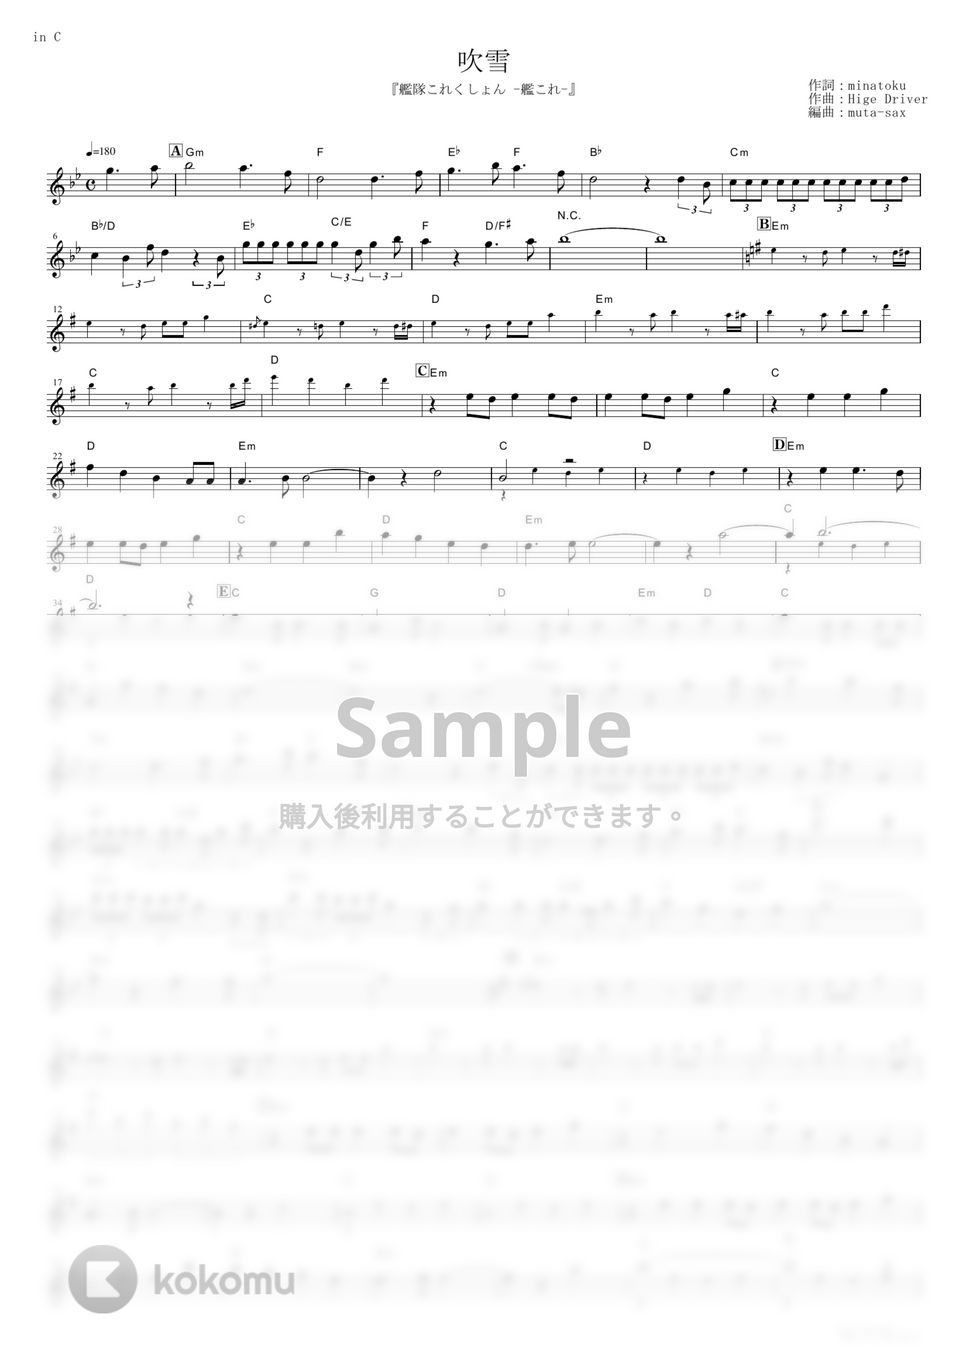 西沢幸奏 - 吹雪 (『艦隊これくしょん -艦これ-』 / in C) by muta-sax